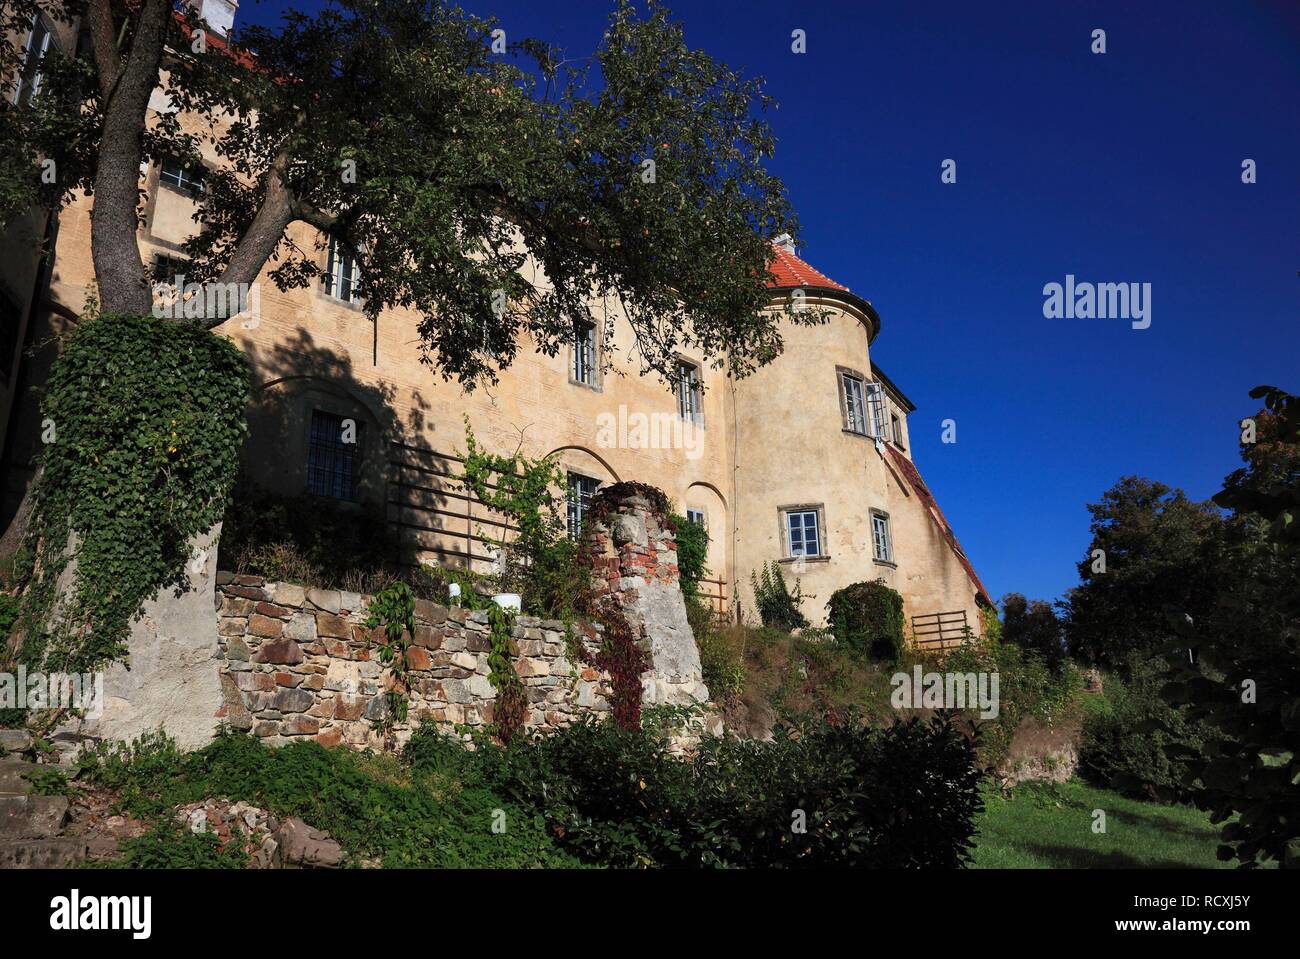 Grabstejn château près de Hradek nad Nisou, district de Liberec, au nord de la Bohême, la Bohême, République Tchèque, Europe Banque D'Images